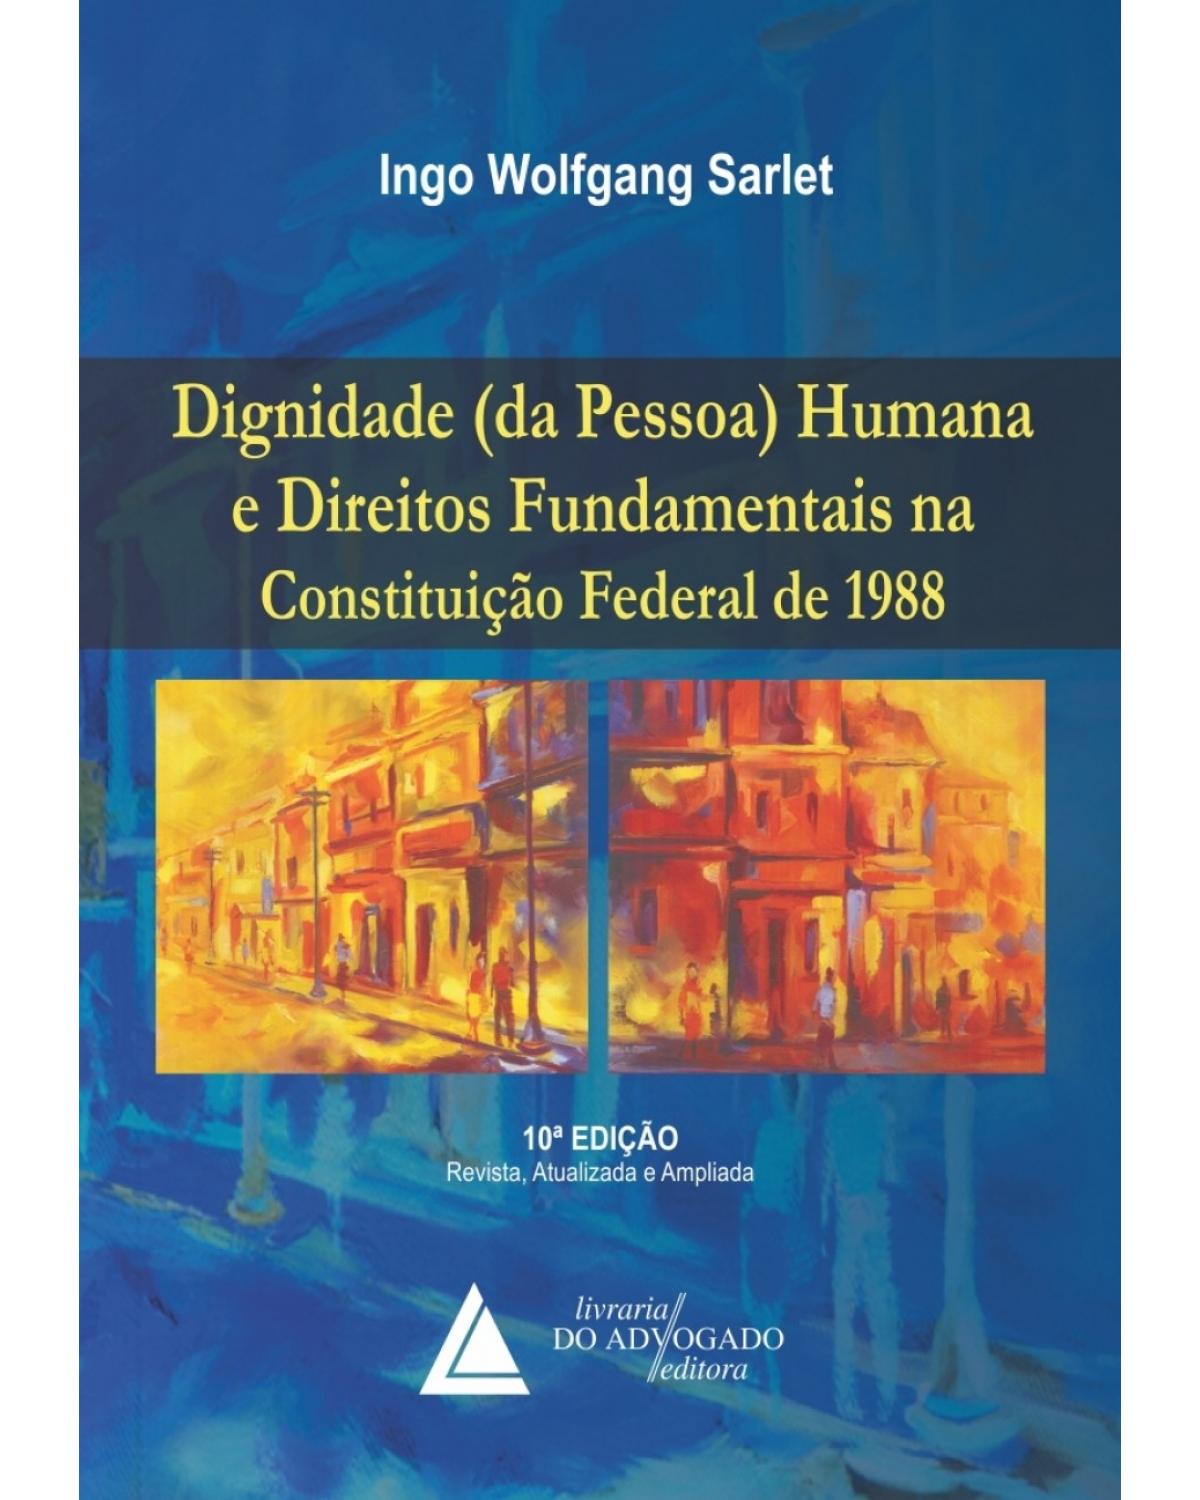 Dignidade (da Pessoa) Humana e Direitos Fundamentais na Constituição Federal de 1988 - 10ª Edição | 2015